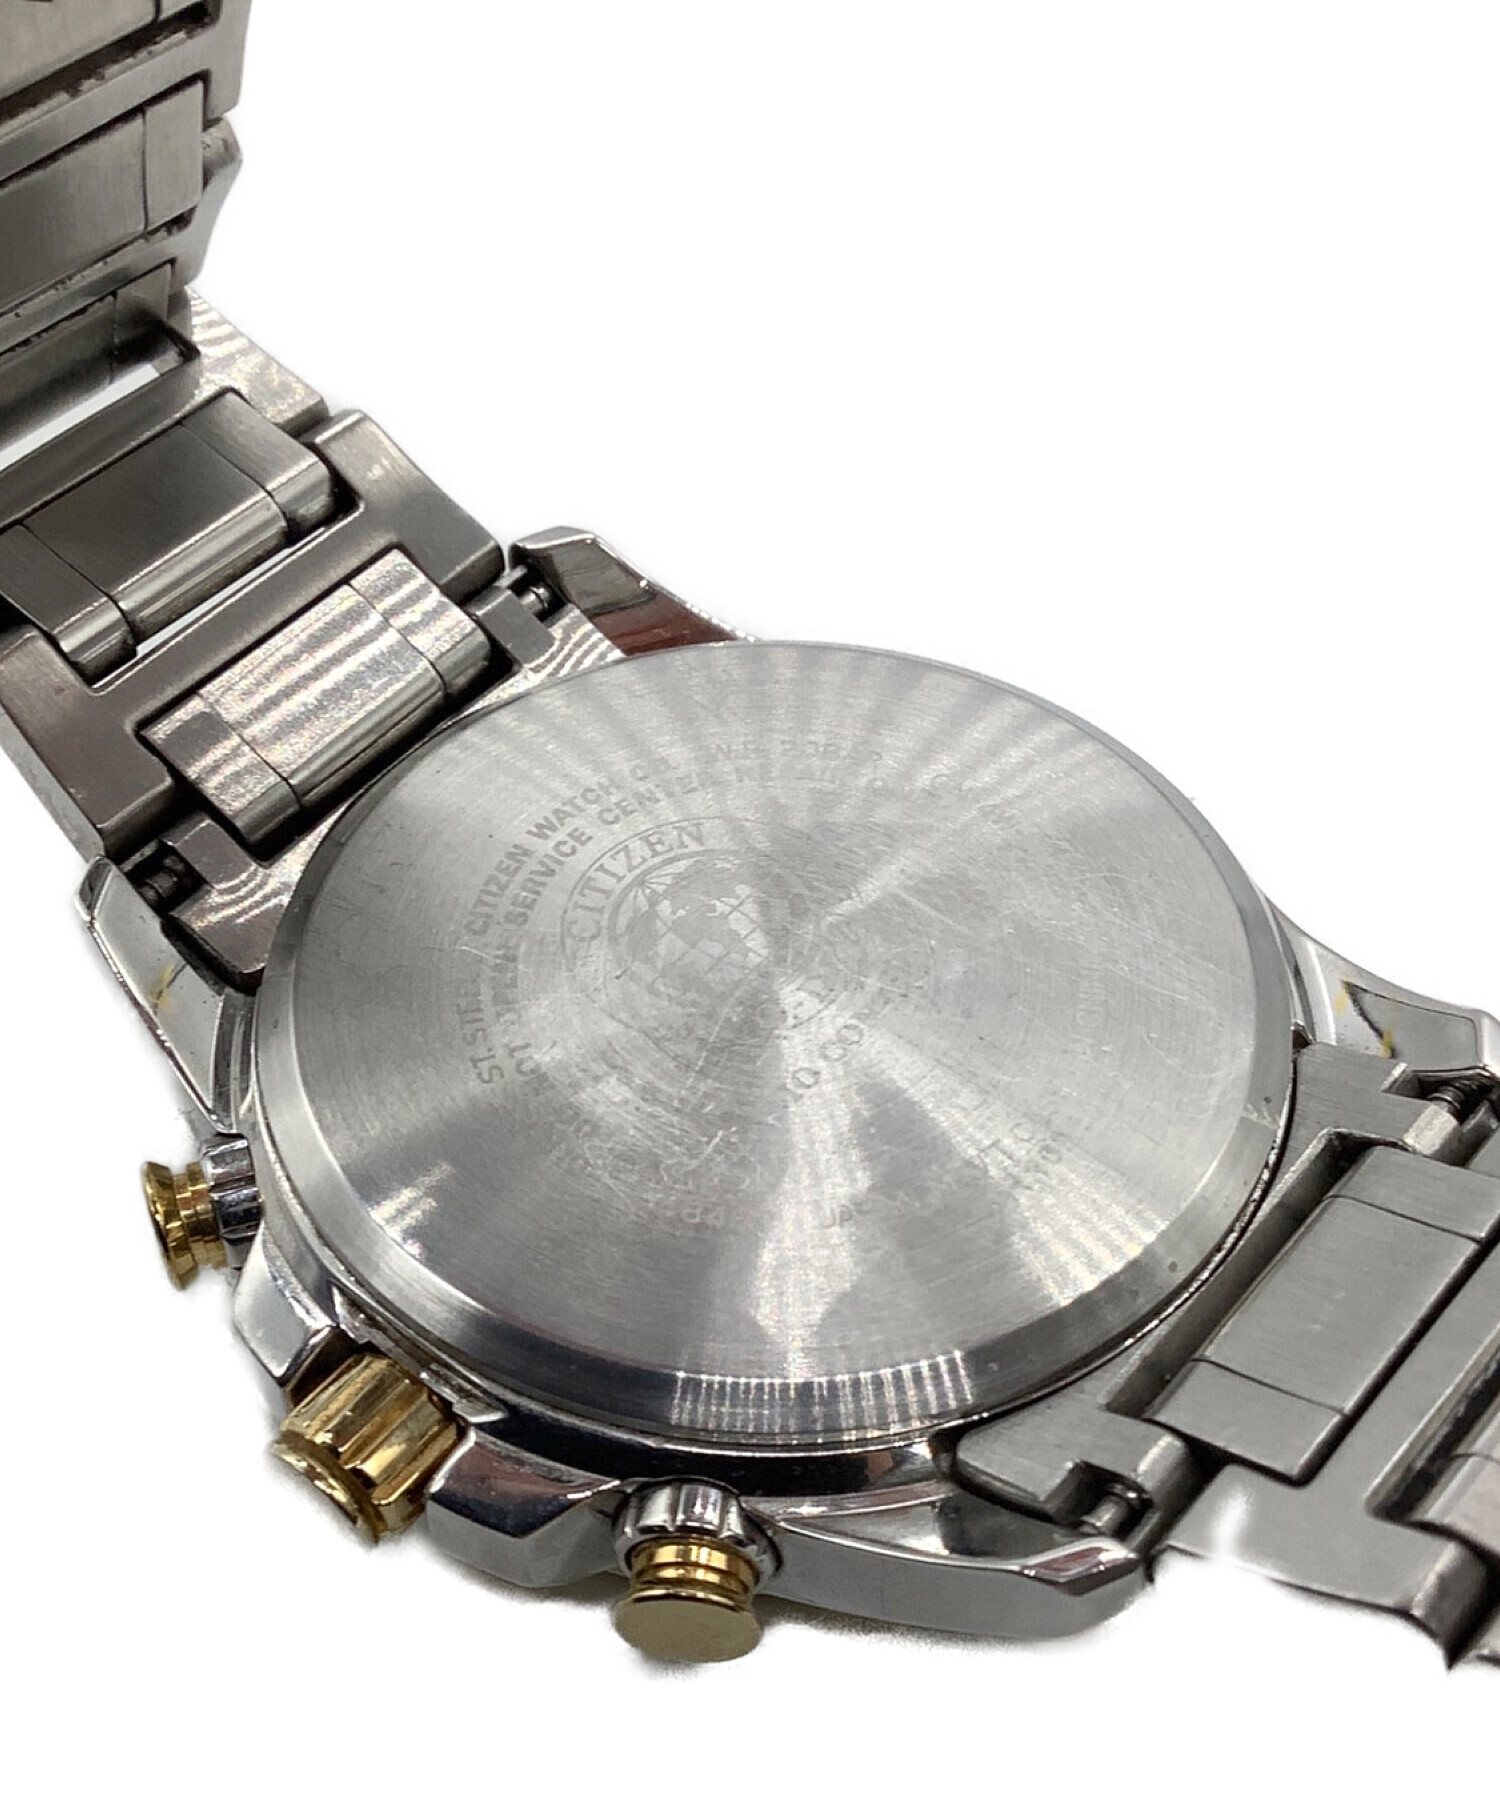 【 シチズン】新品未使用 Eco-Drive クロノ メンズ 腕時計 ★308腕時計(アナログ)